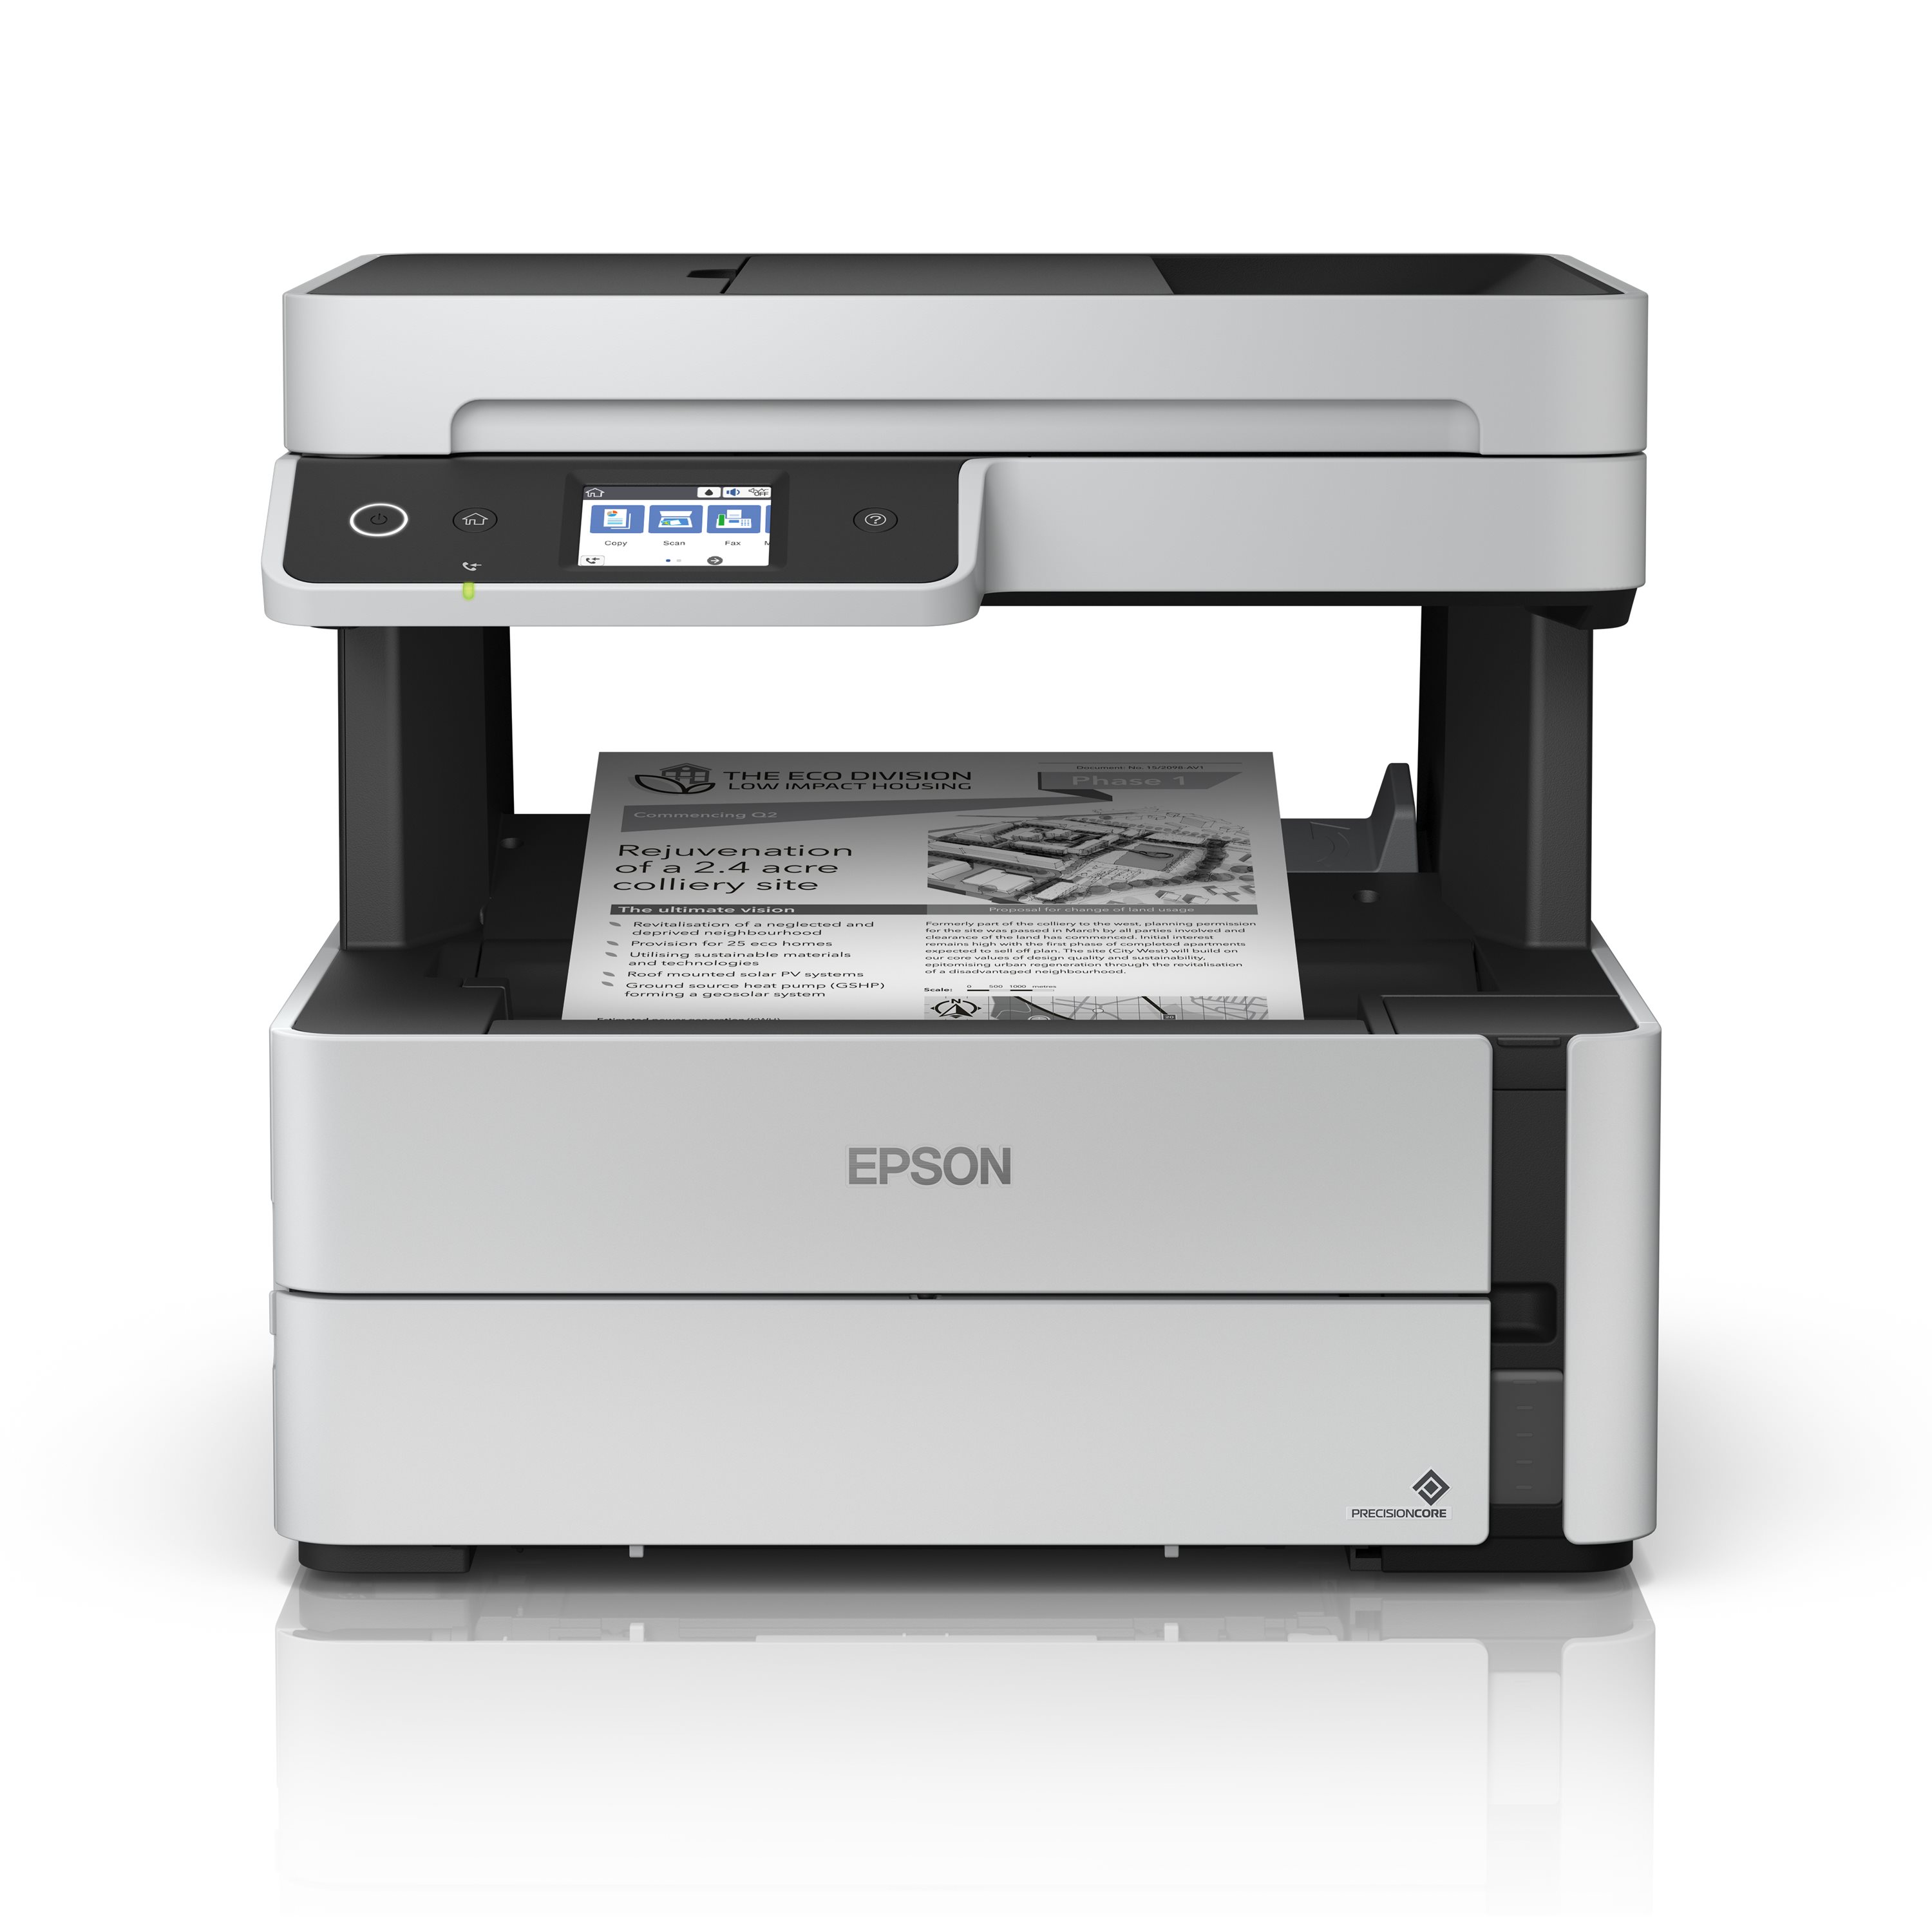 Oferta impresora epson xp2101 multifuncion usb wifi Al mejor precio